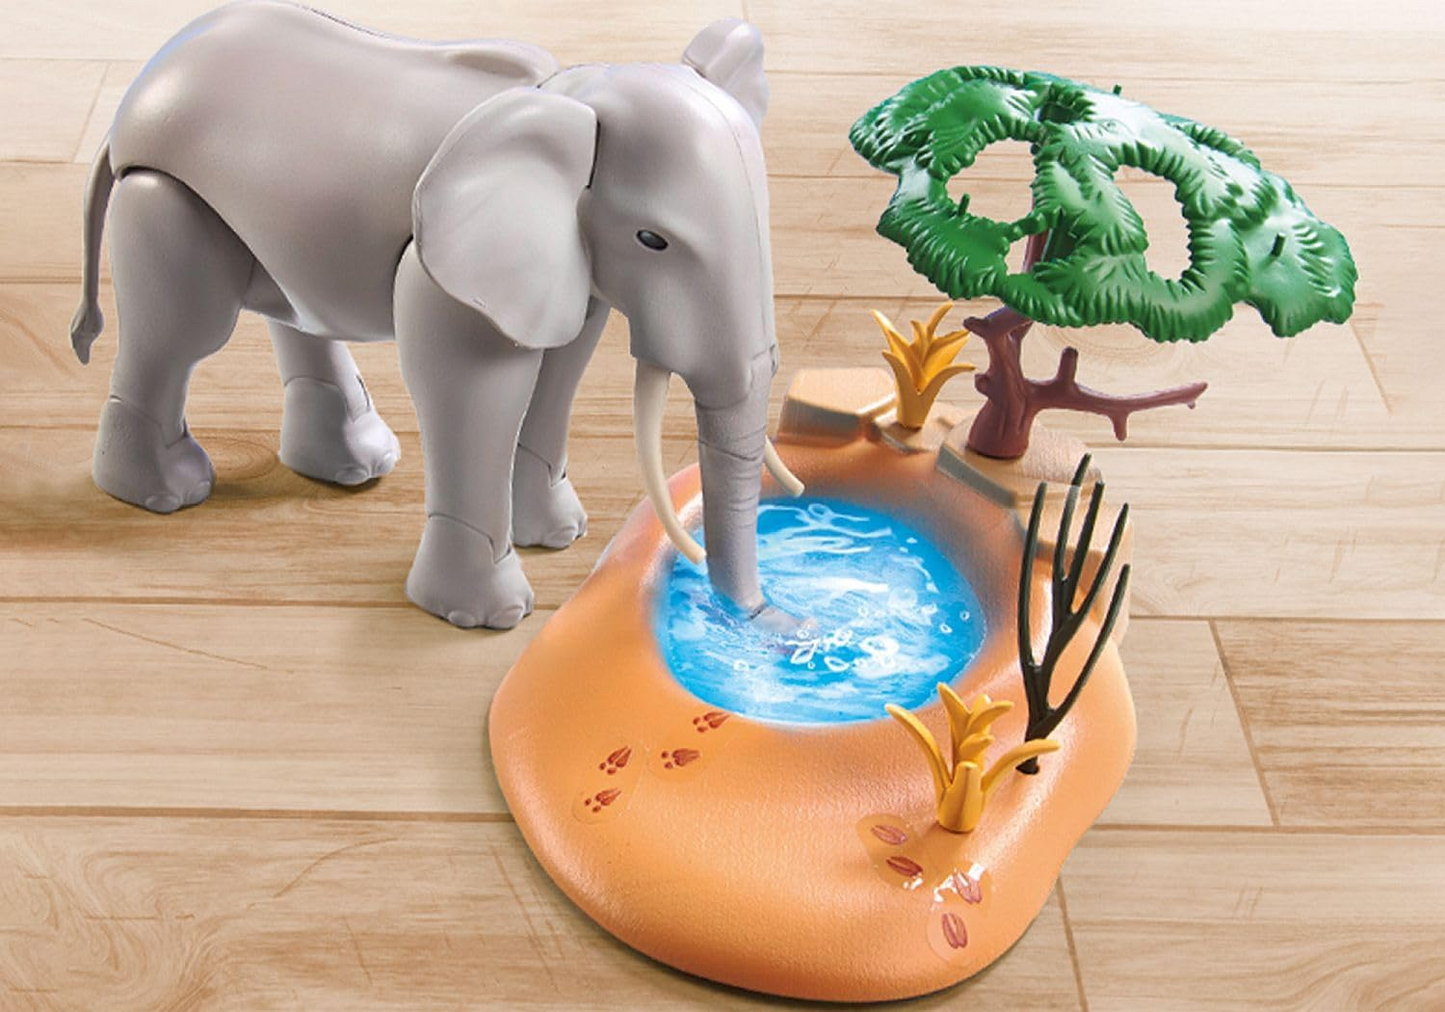 Playmobil 71294 Wiltopia Elefante no Waterhole, safári emocionante com efeito de aprendizagem de animais, brinquedo educativo, dramatização sustentável e divertida e imaginativa, conjuntos de jogos adequados para crianças a partir de 4 anos